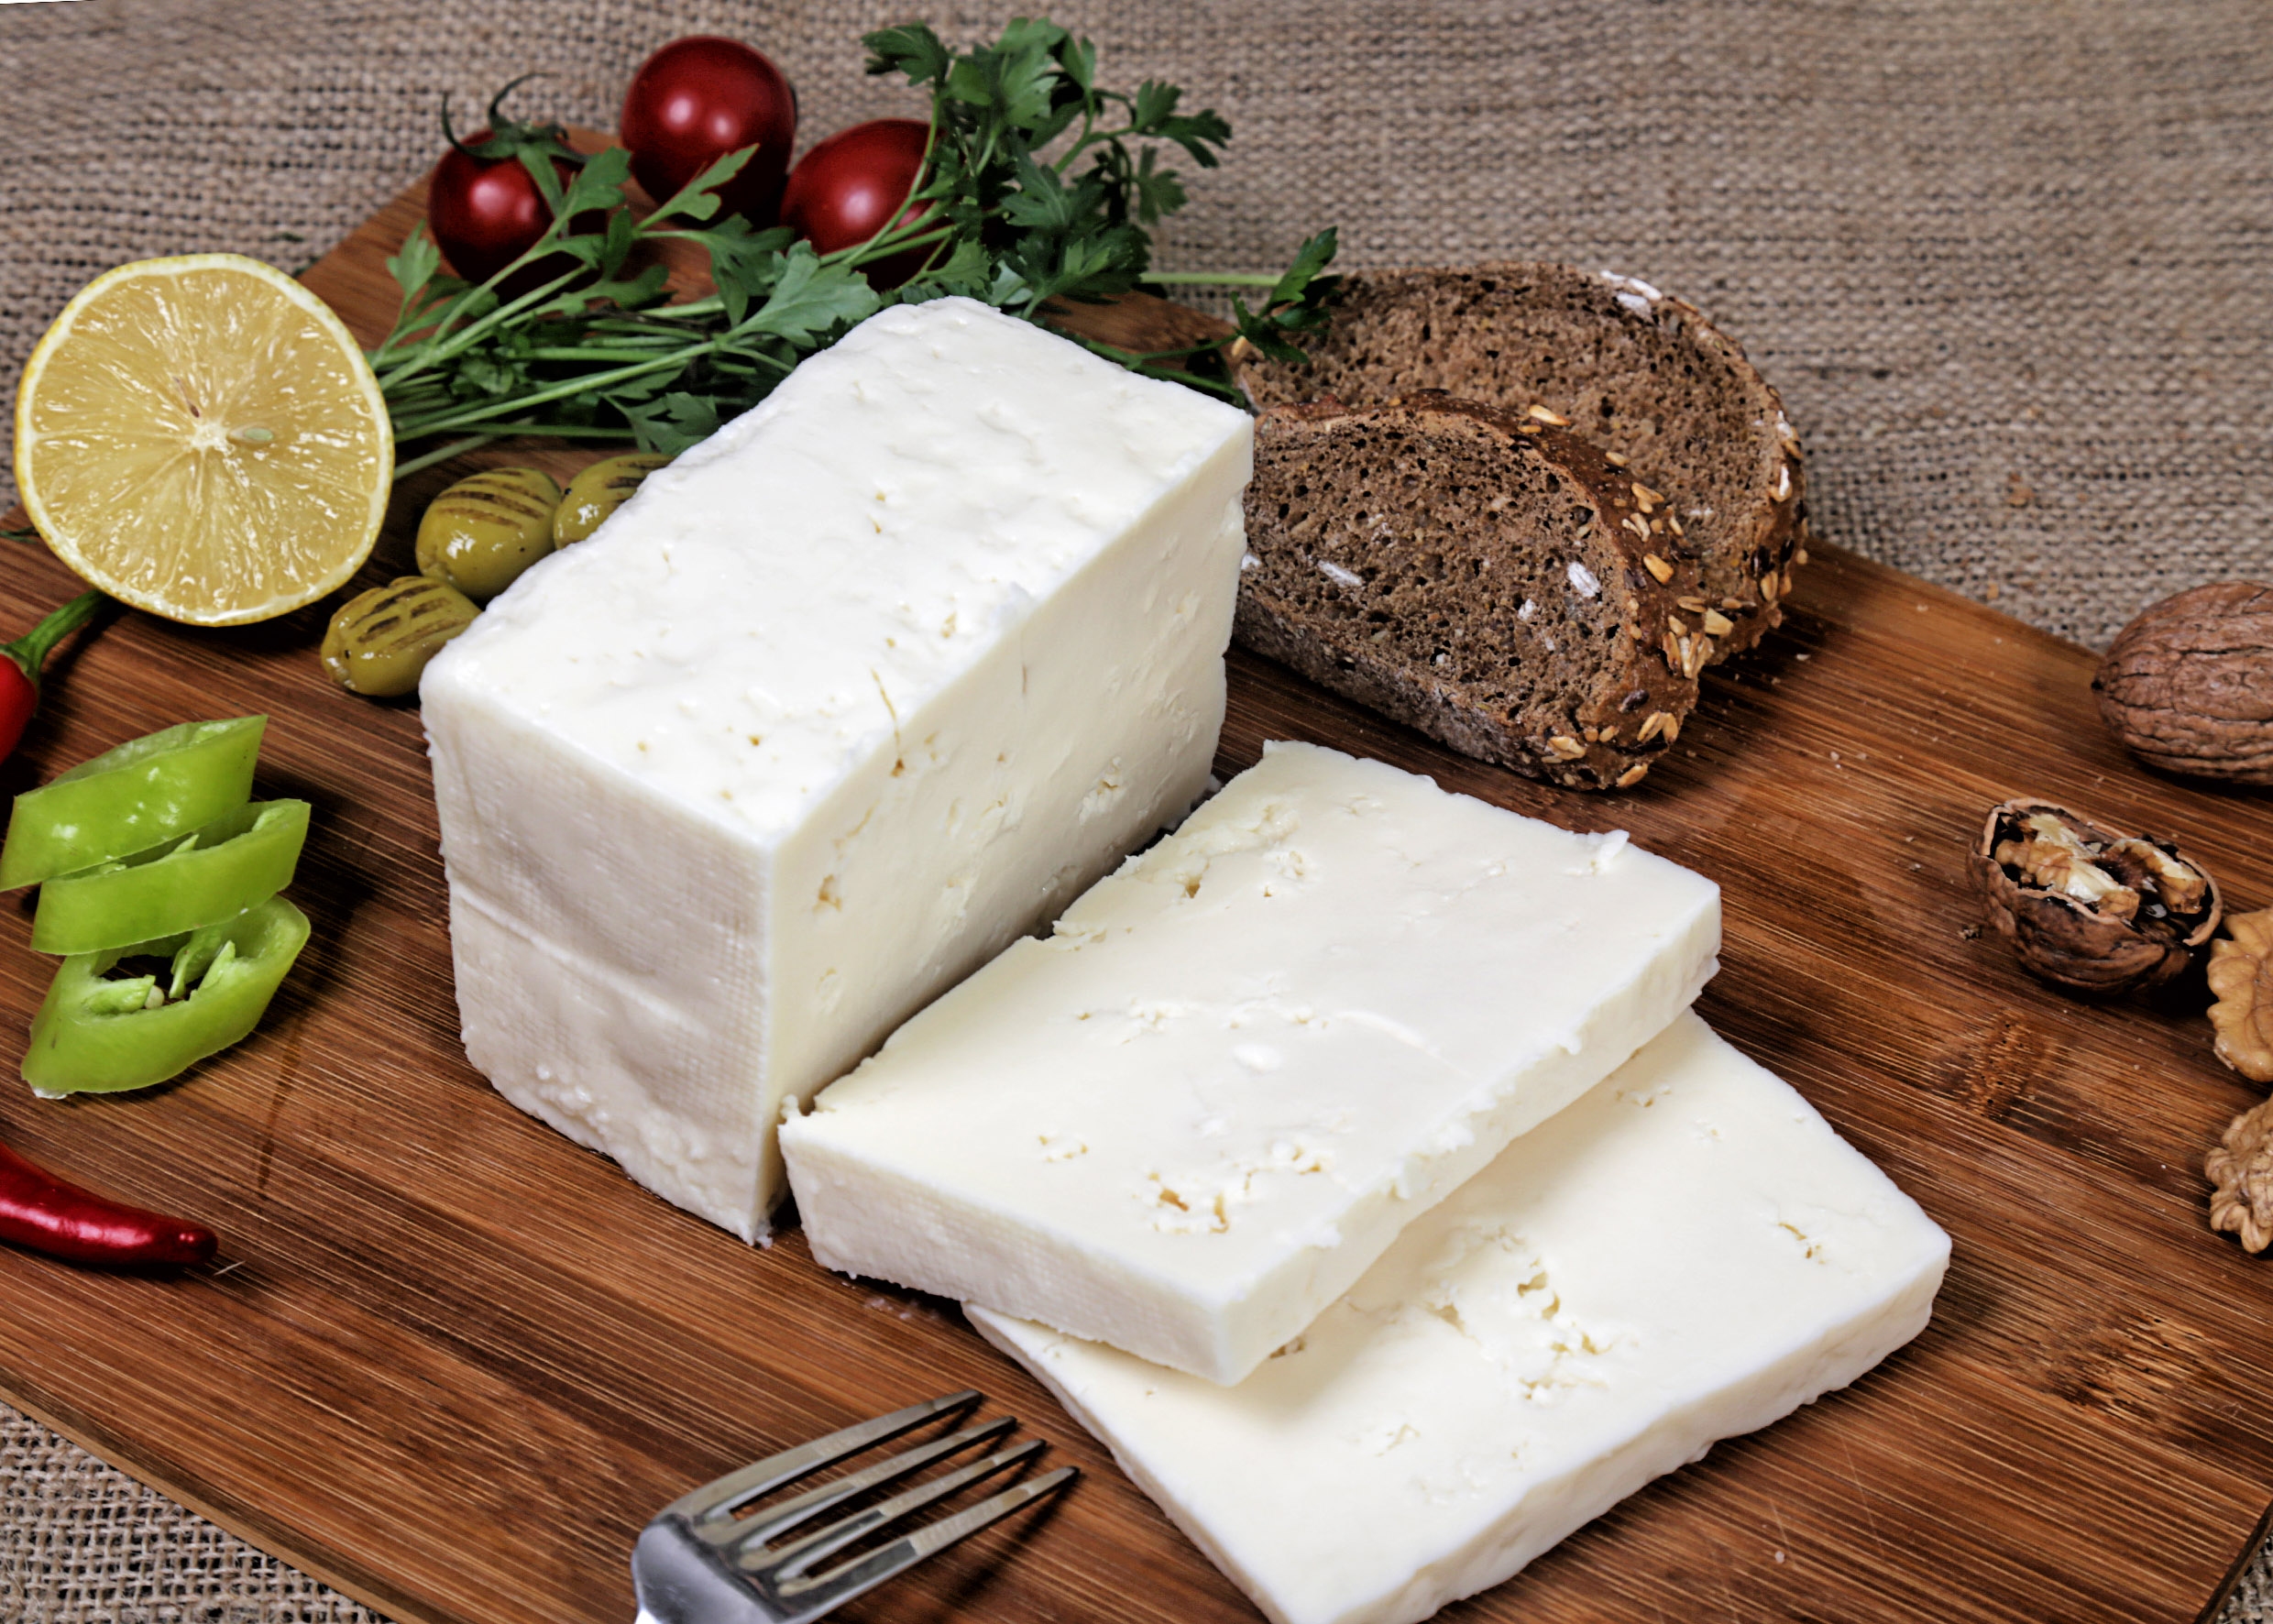 يتم إنتاج أصناف متنوعة من الجبنة البيضاء والمملحة في تركيا